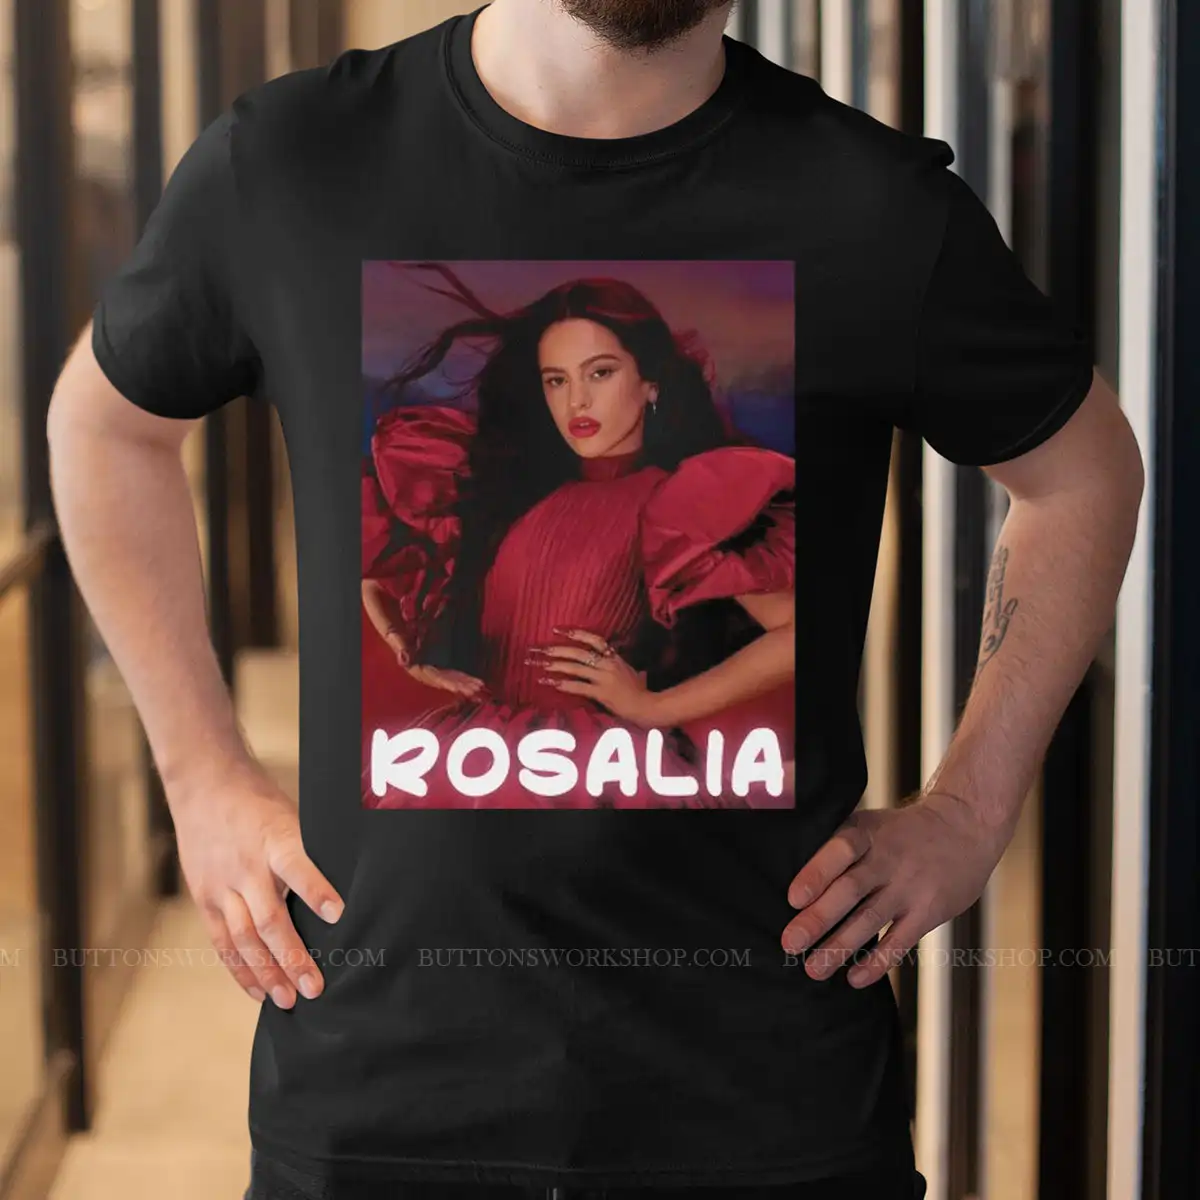 Rosalia T-Shirt Unisex Tshirt